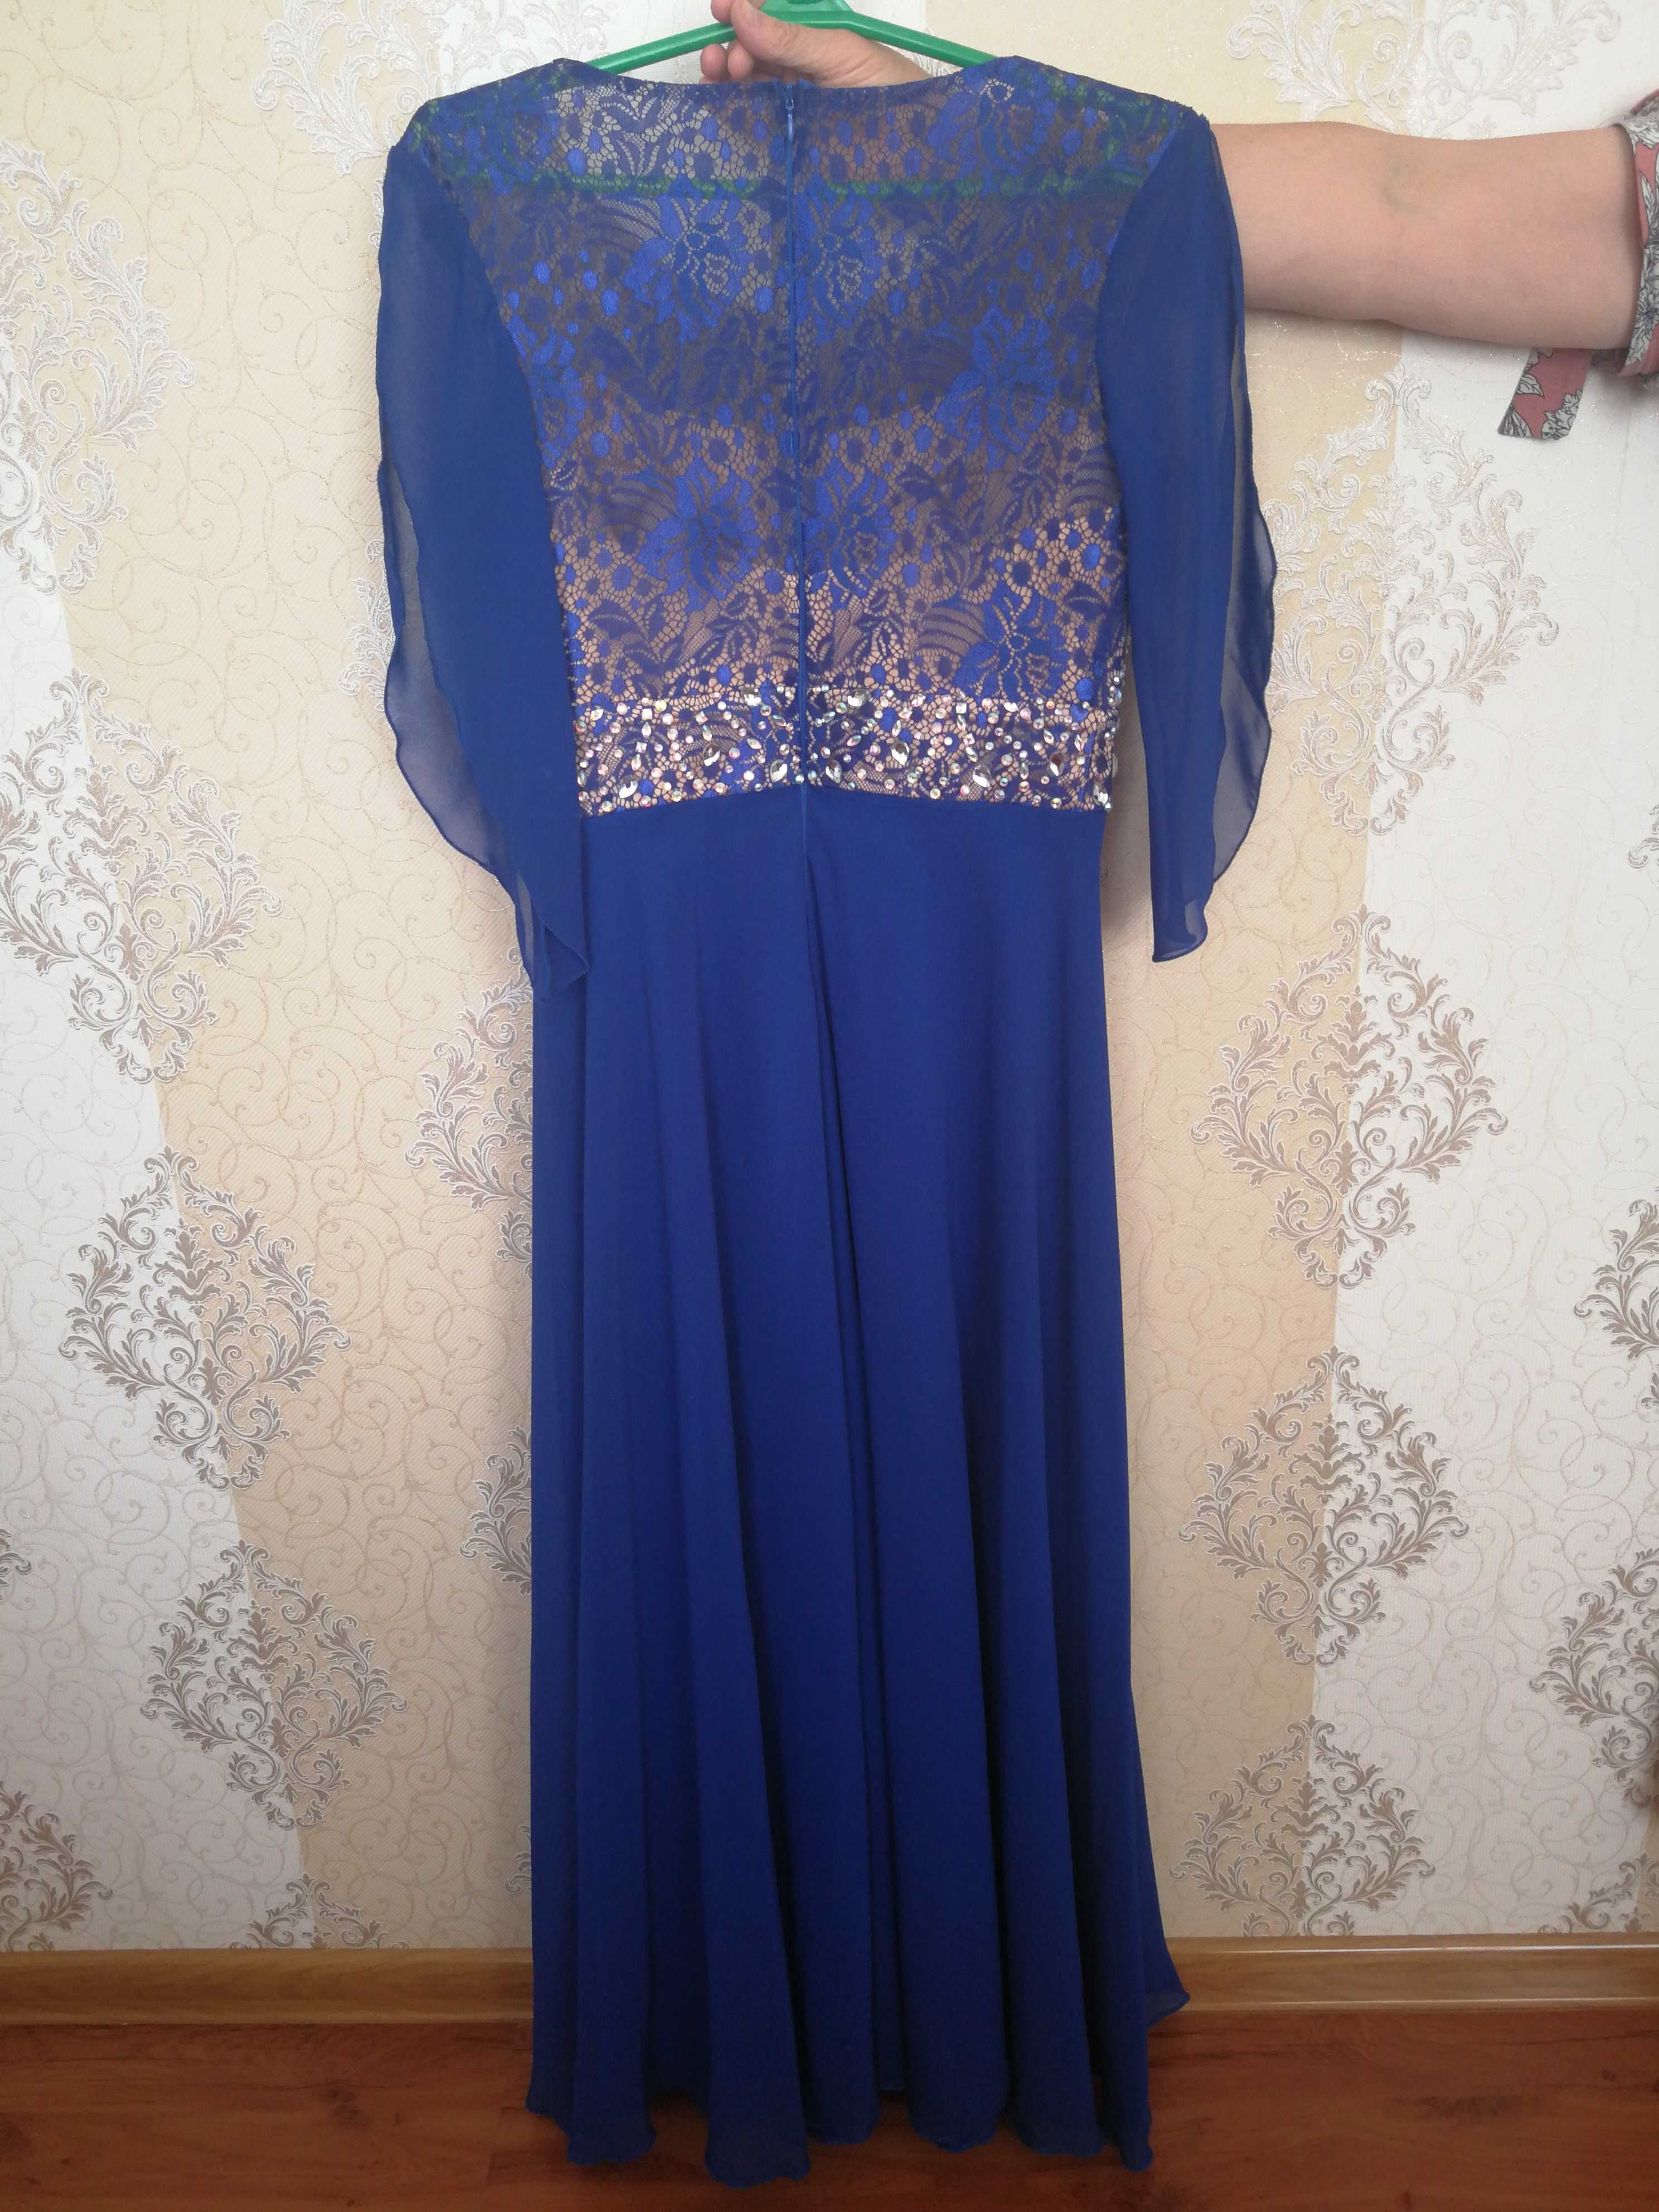 Вечернее платье синего(электро) цвета, турецкое, высокого качества